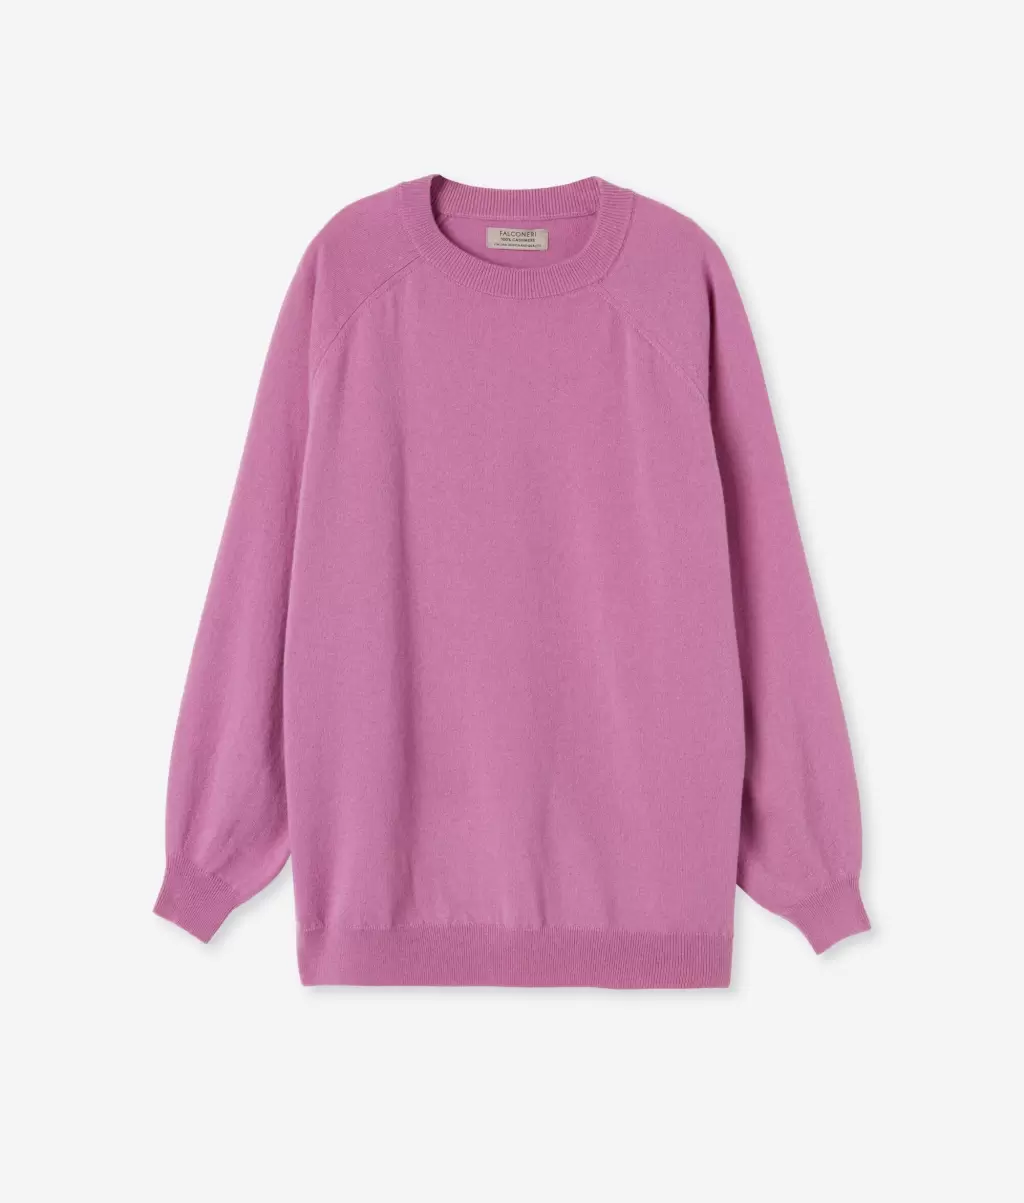 Falconeri Swetry Z Okrągłym Dekoltem Kobieta Bluzka Maxi Z Okągłym Dekoltem Z Kaszmiru Ultrasoft Pink - 4